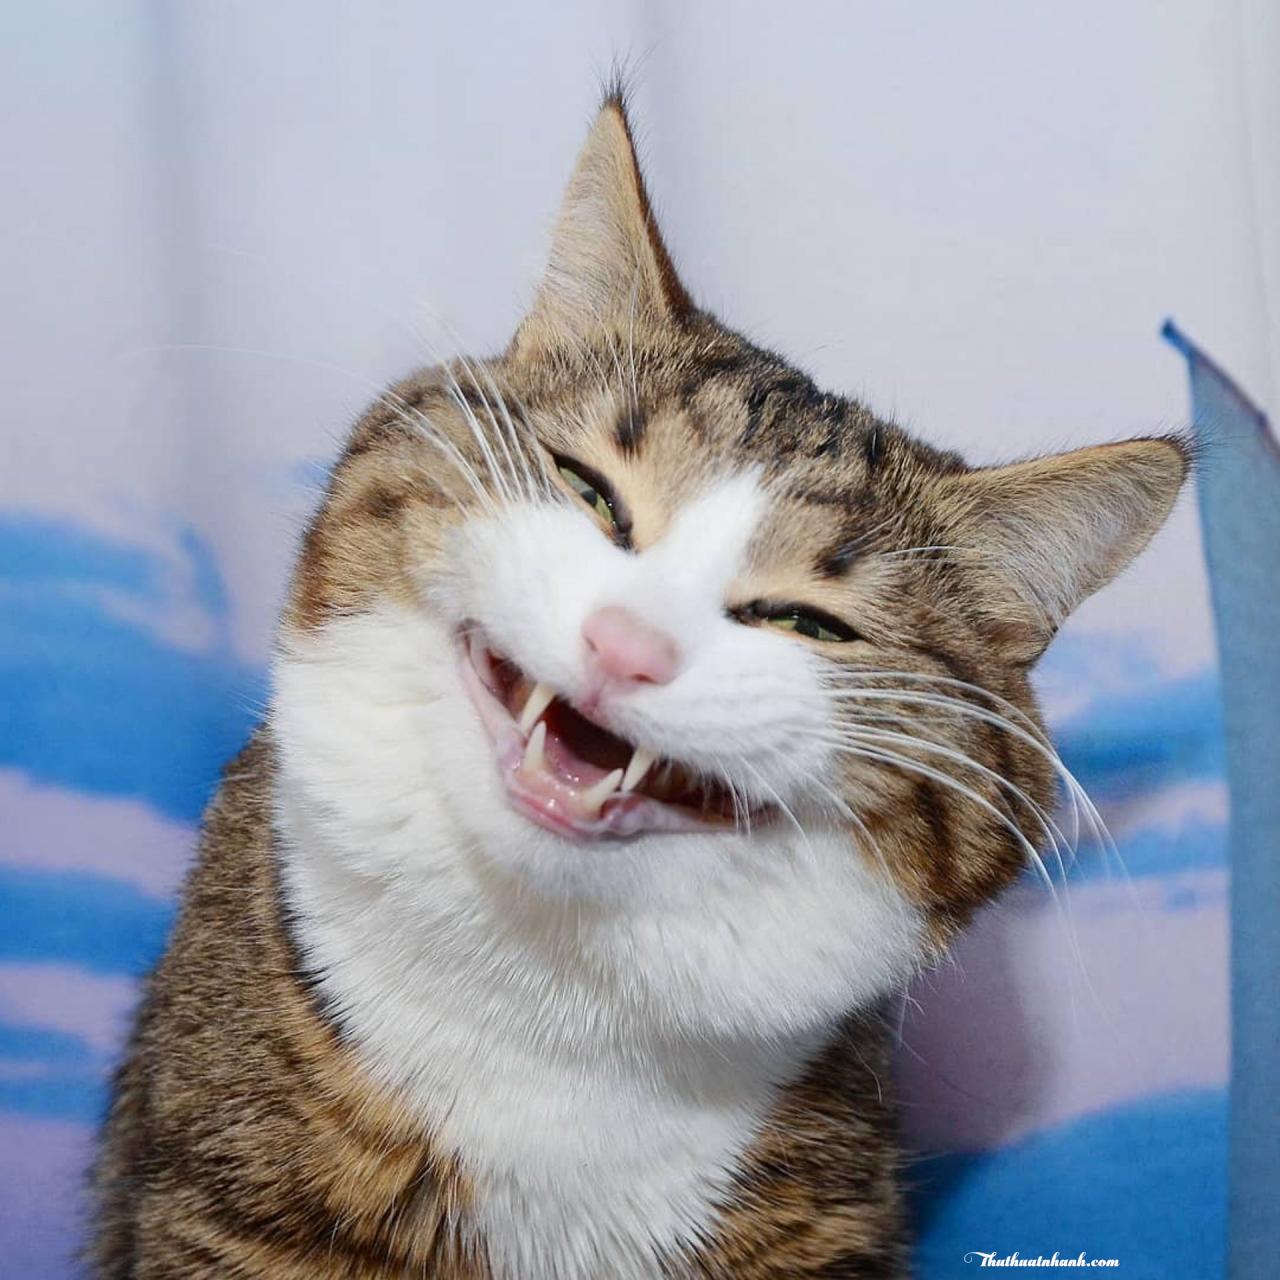 Meme mèo cười đểu nhe răng ha ha nhếch mép nham hiểm